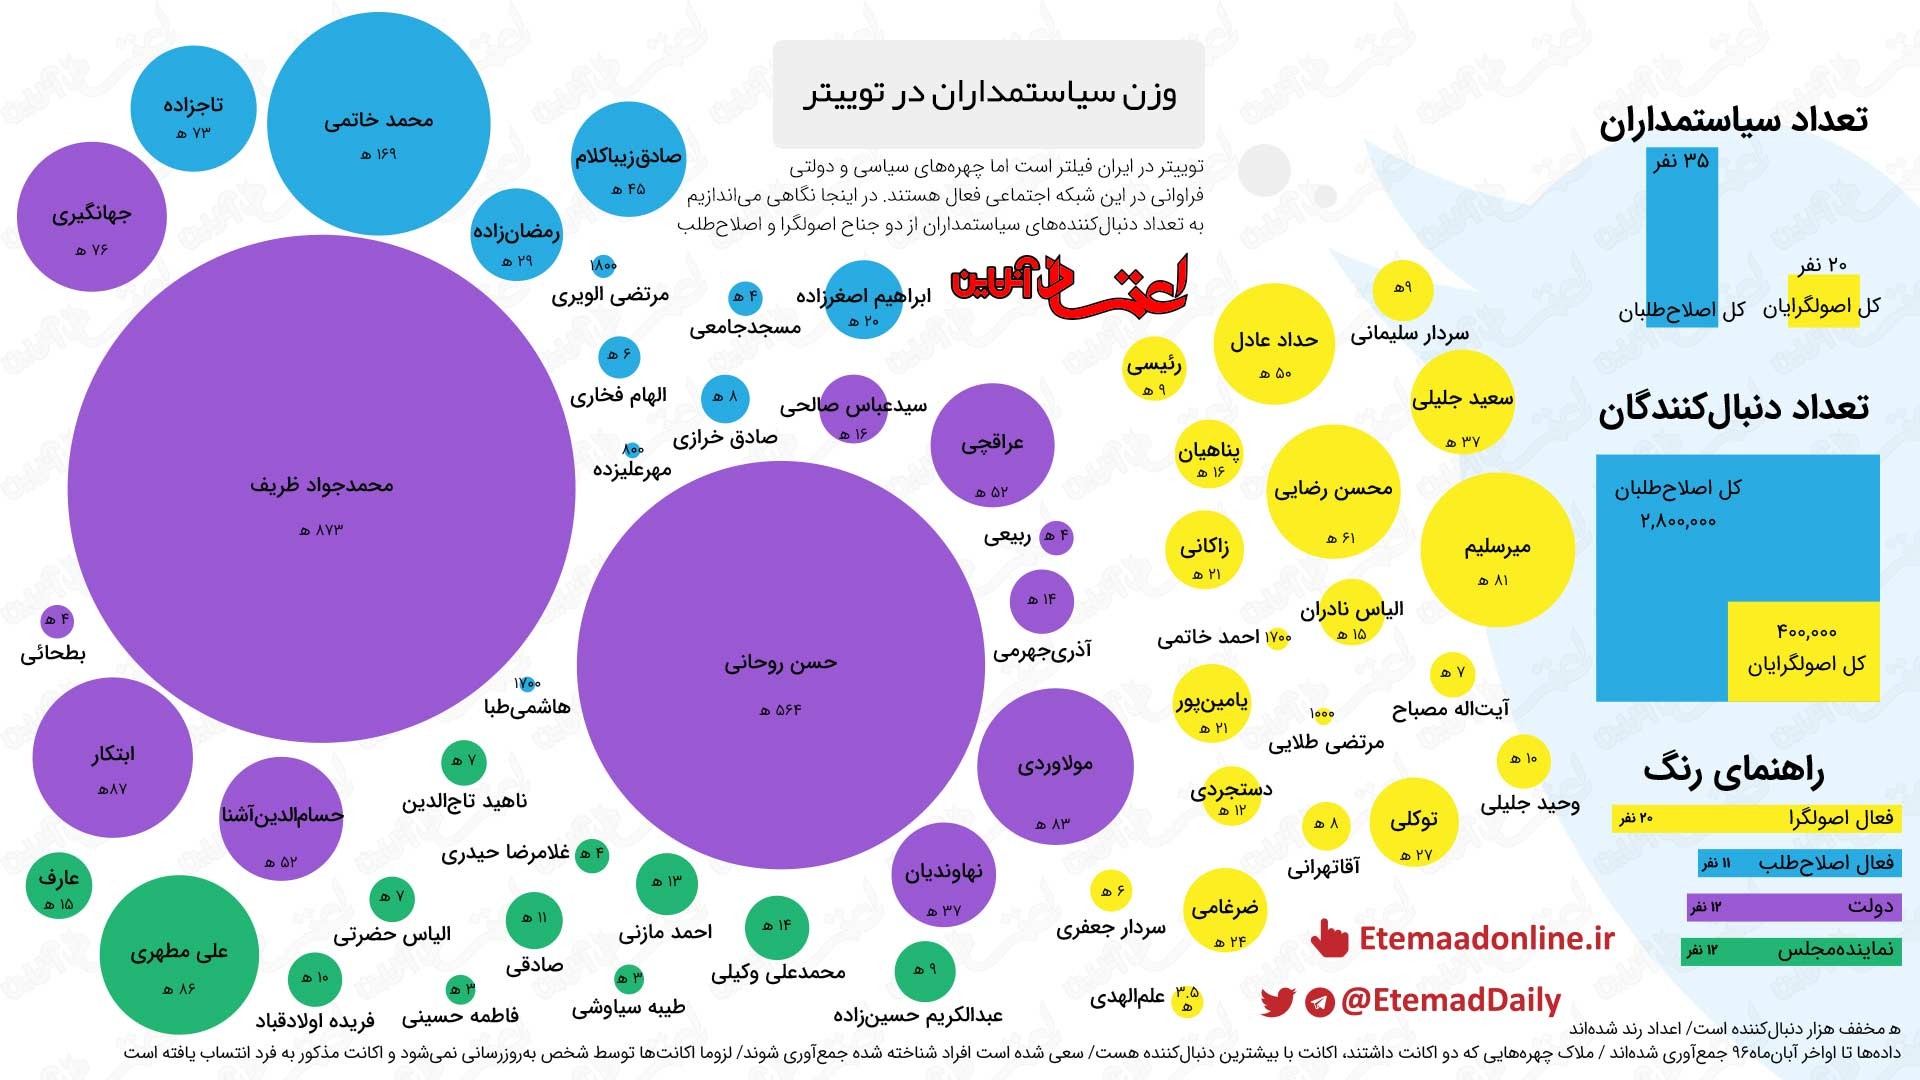 اینفوگرافیک: وزن سیاستمداران ایرانی در توییتر